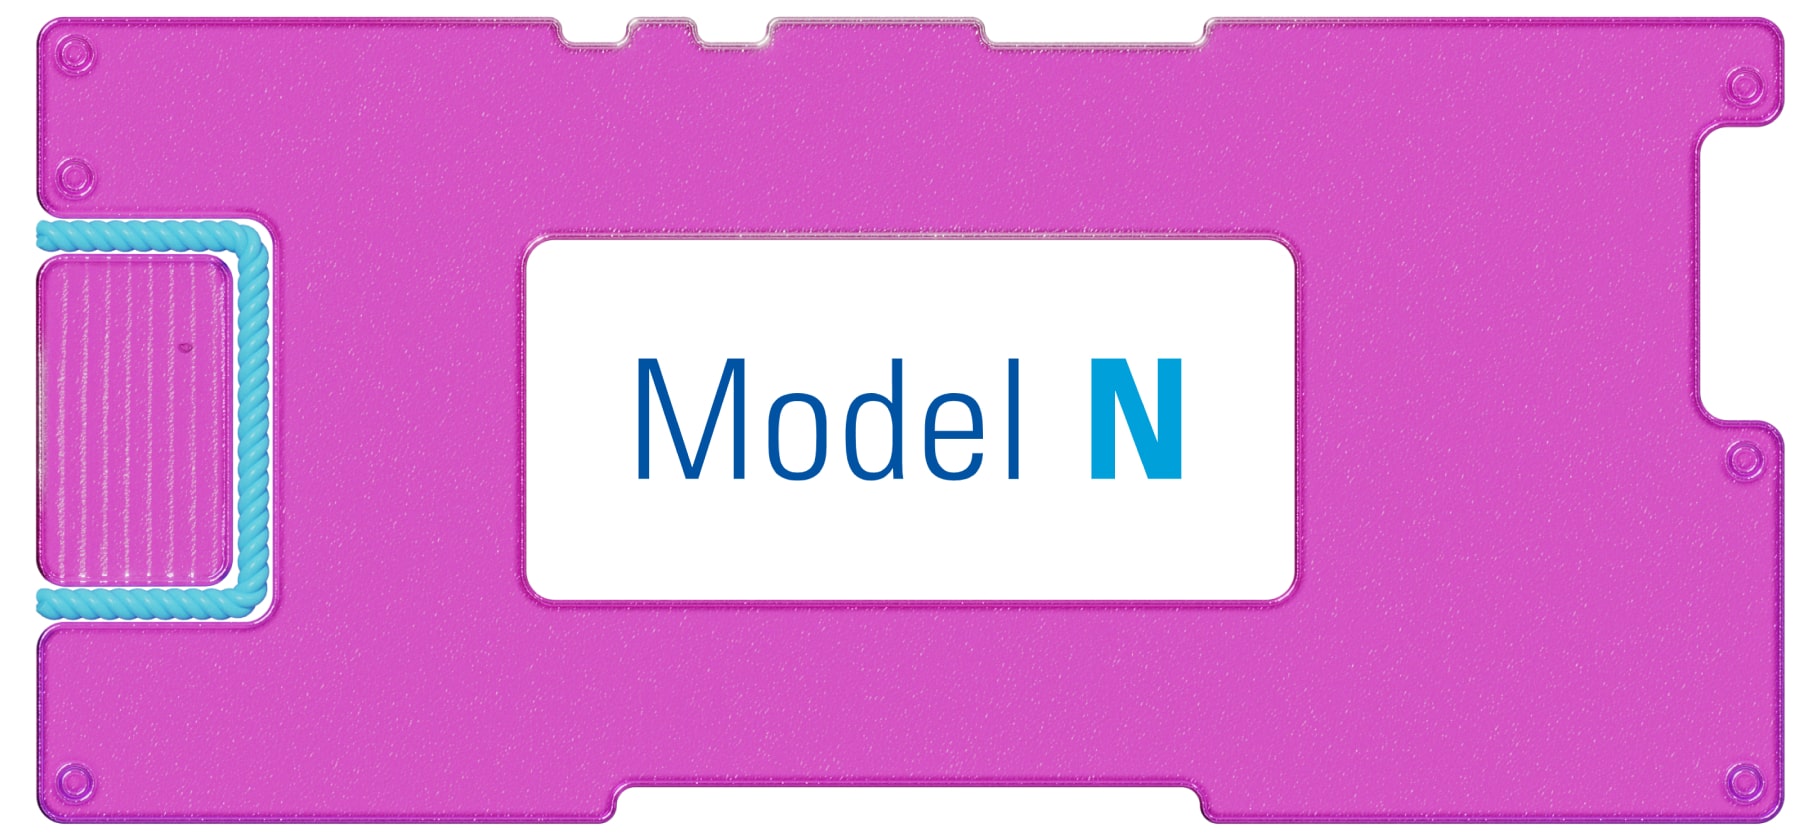 Инвестидея: Model N, потому что размер имеет значение